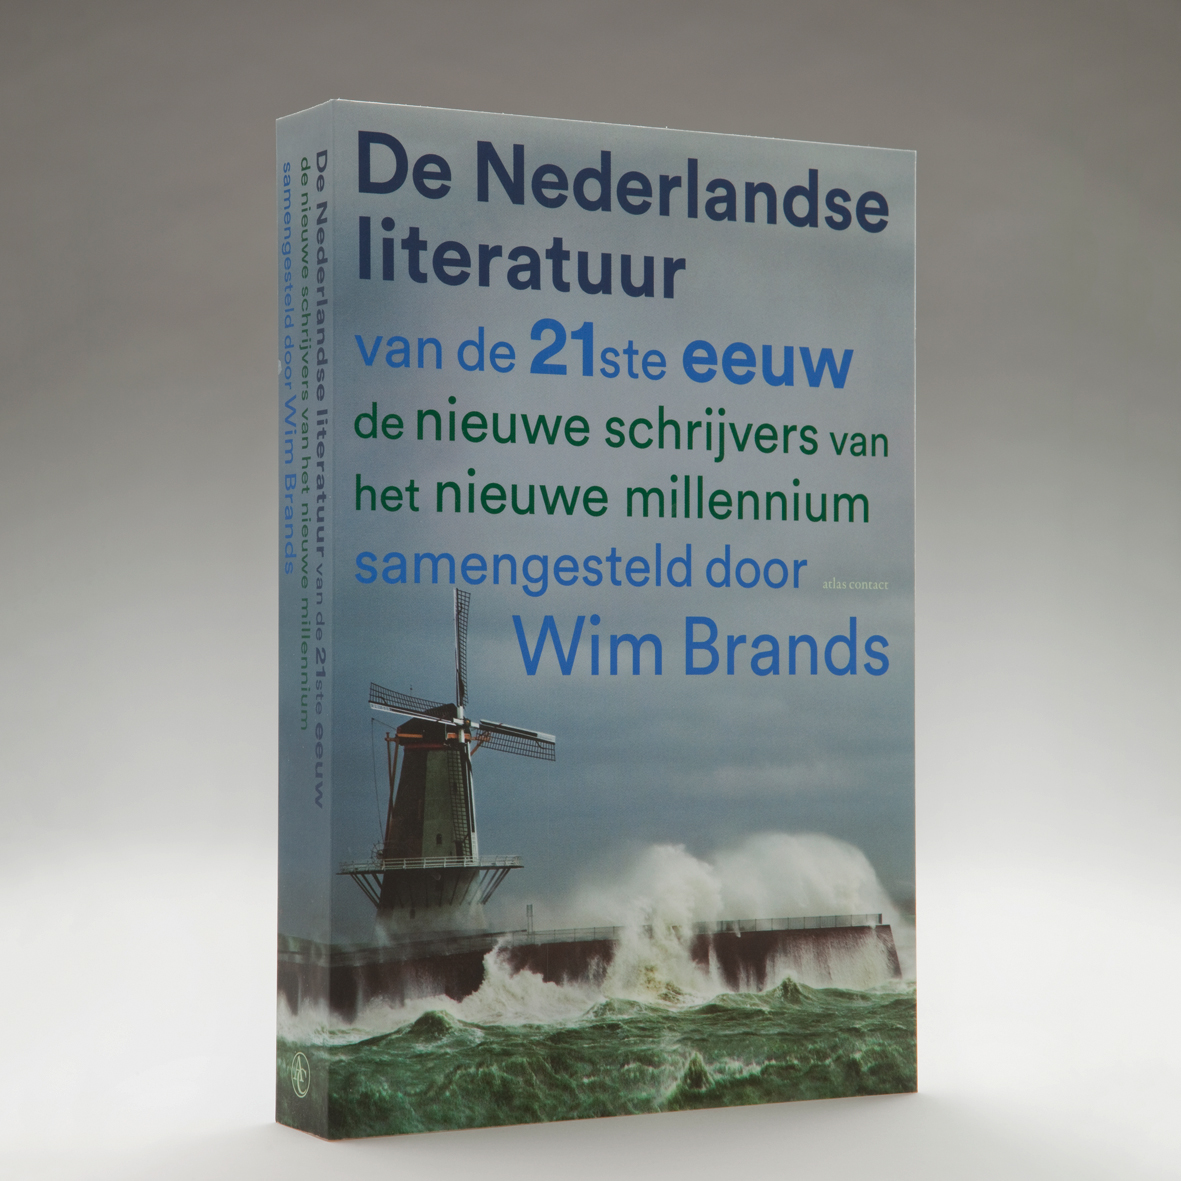 De Nederlandse literatuur van de 21ste eeuw by Wim Brands - In Use